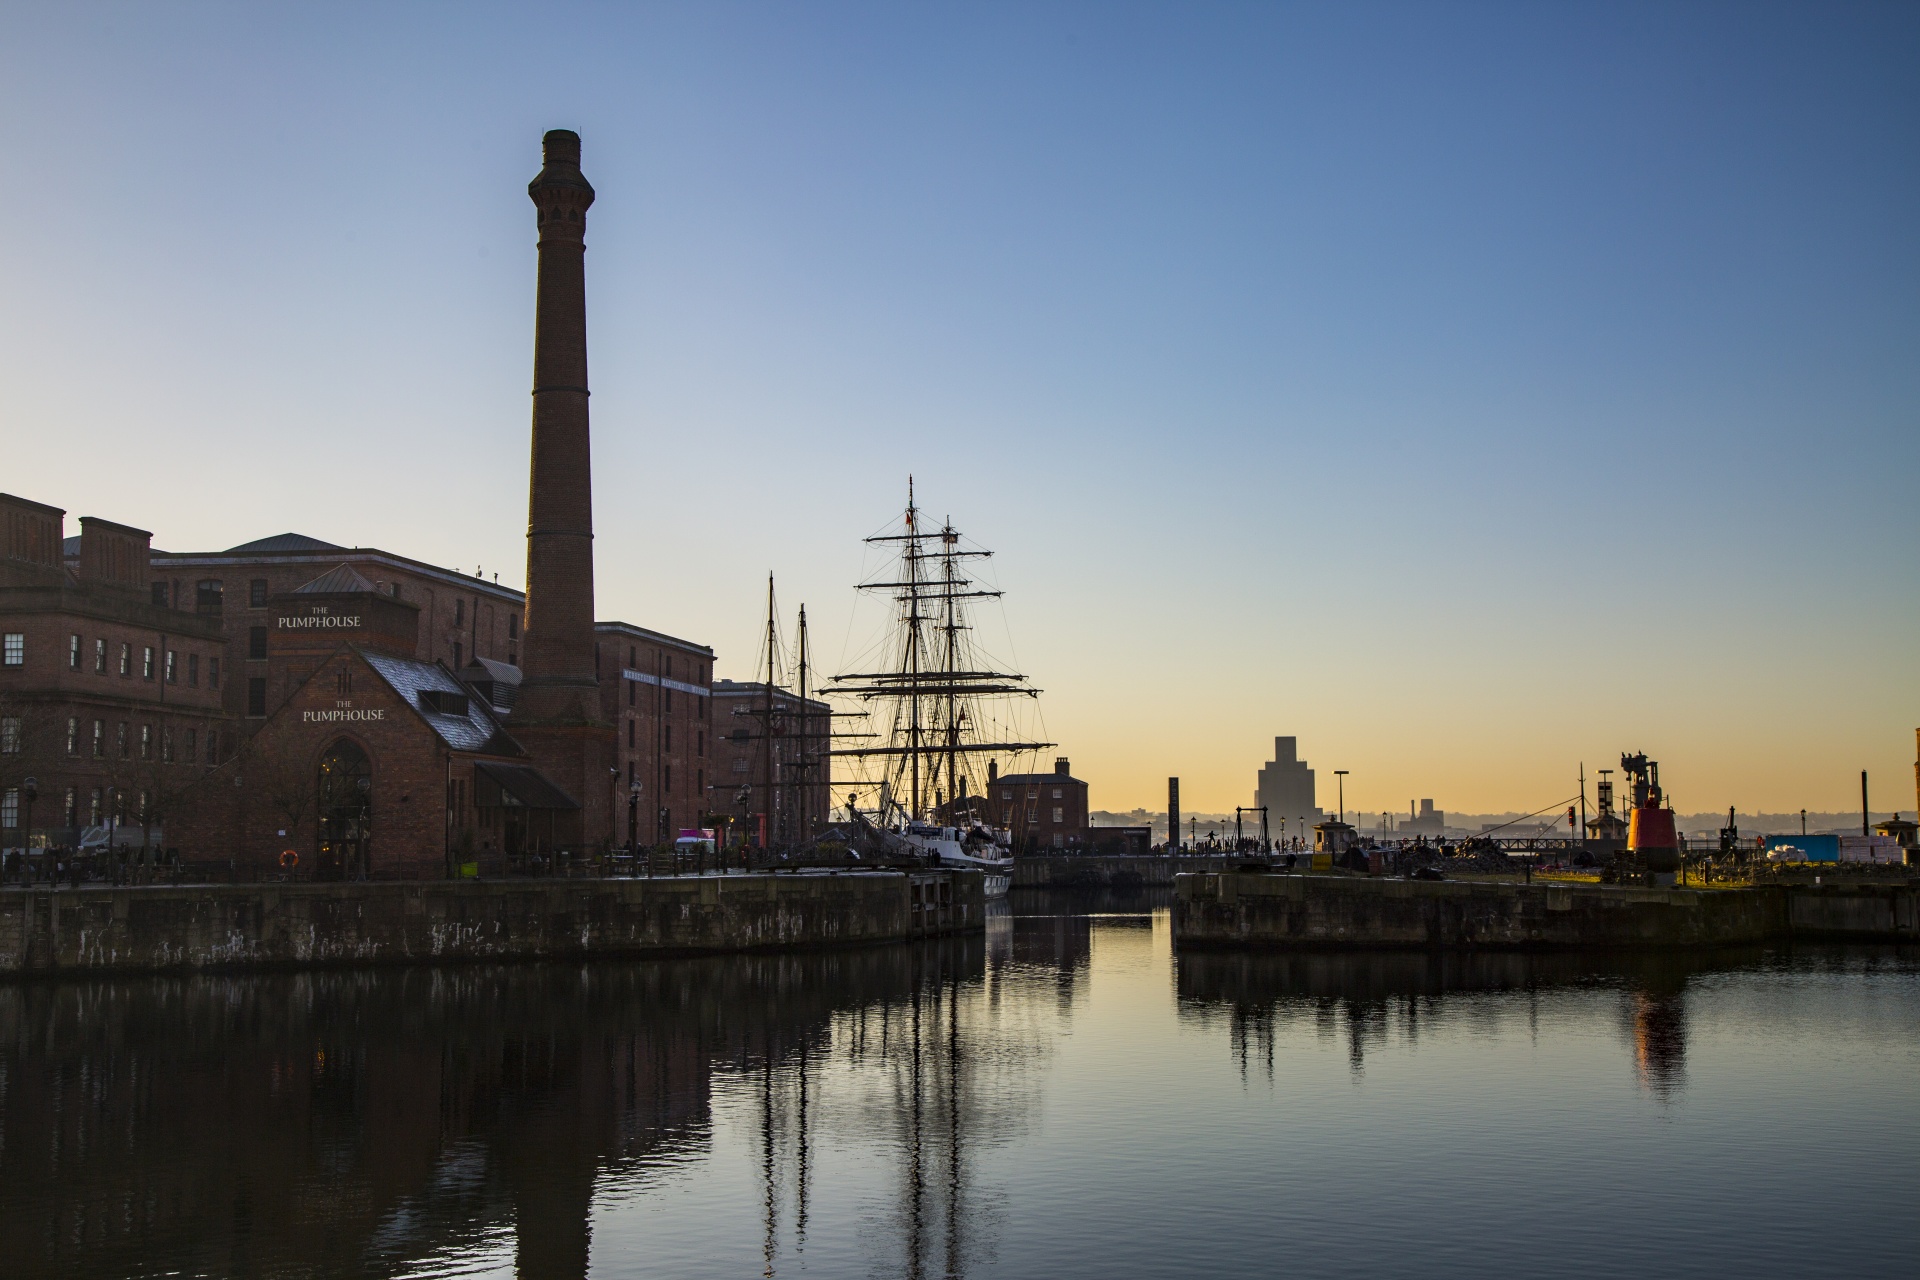 Liverpool Albert Dock